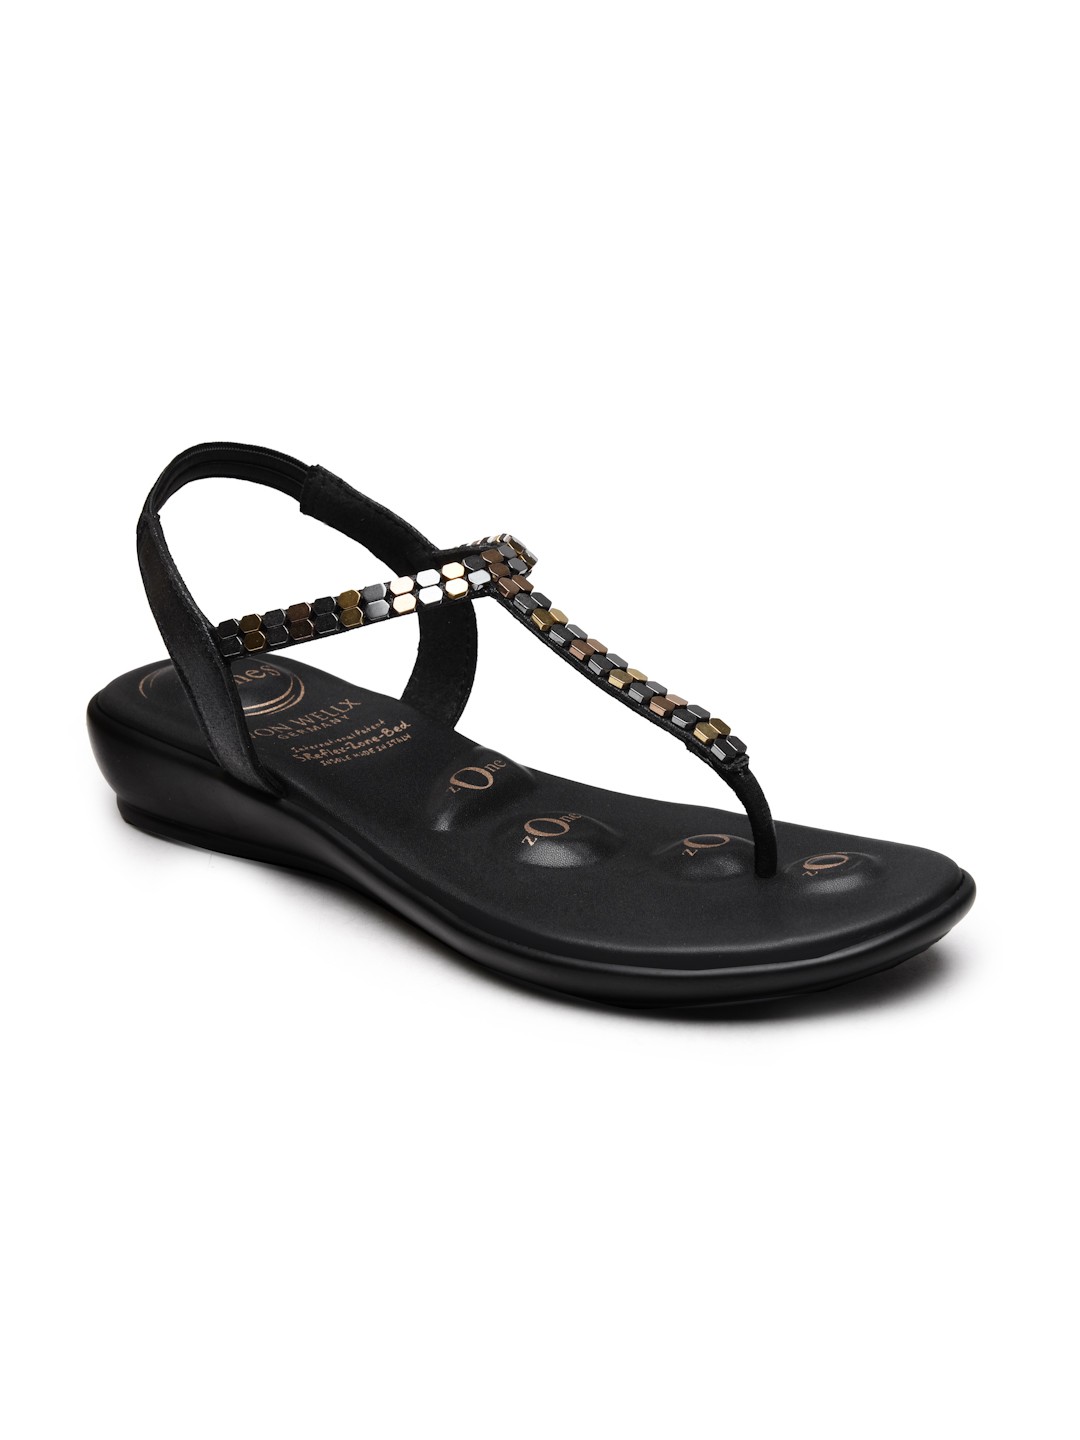 Buy Von Wellx Germany Comfort Women's Black Casual Sandals Regina Online in Rajkot